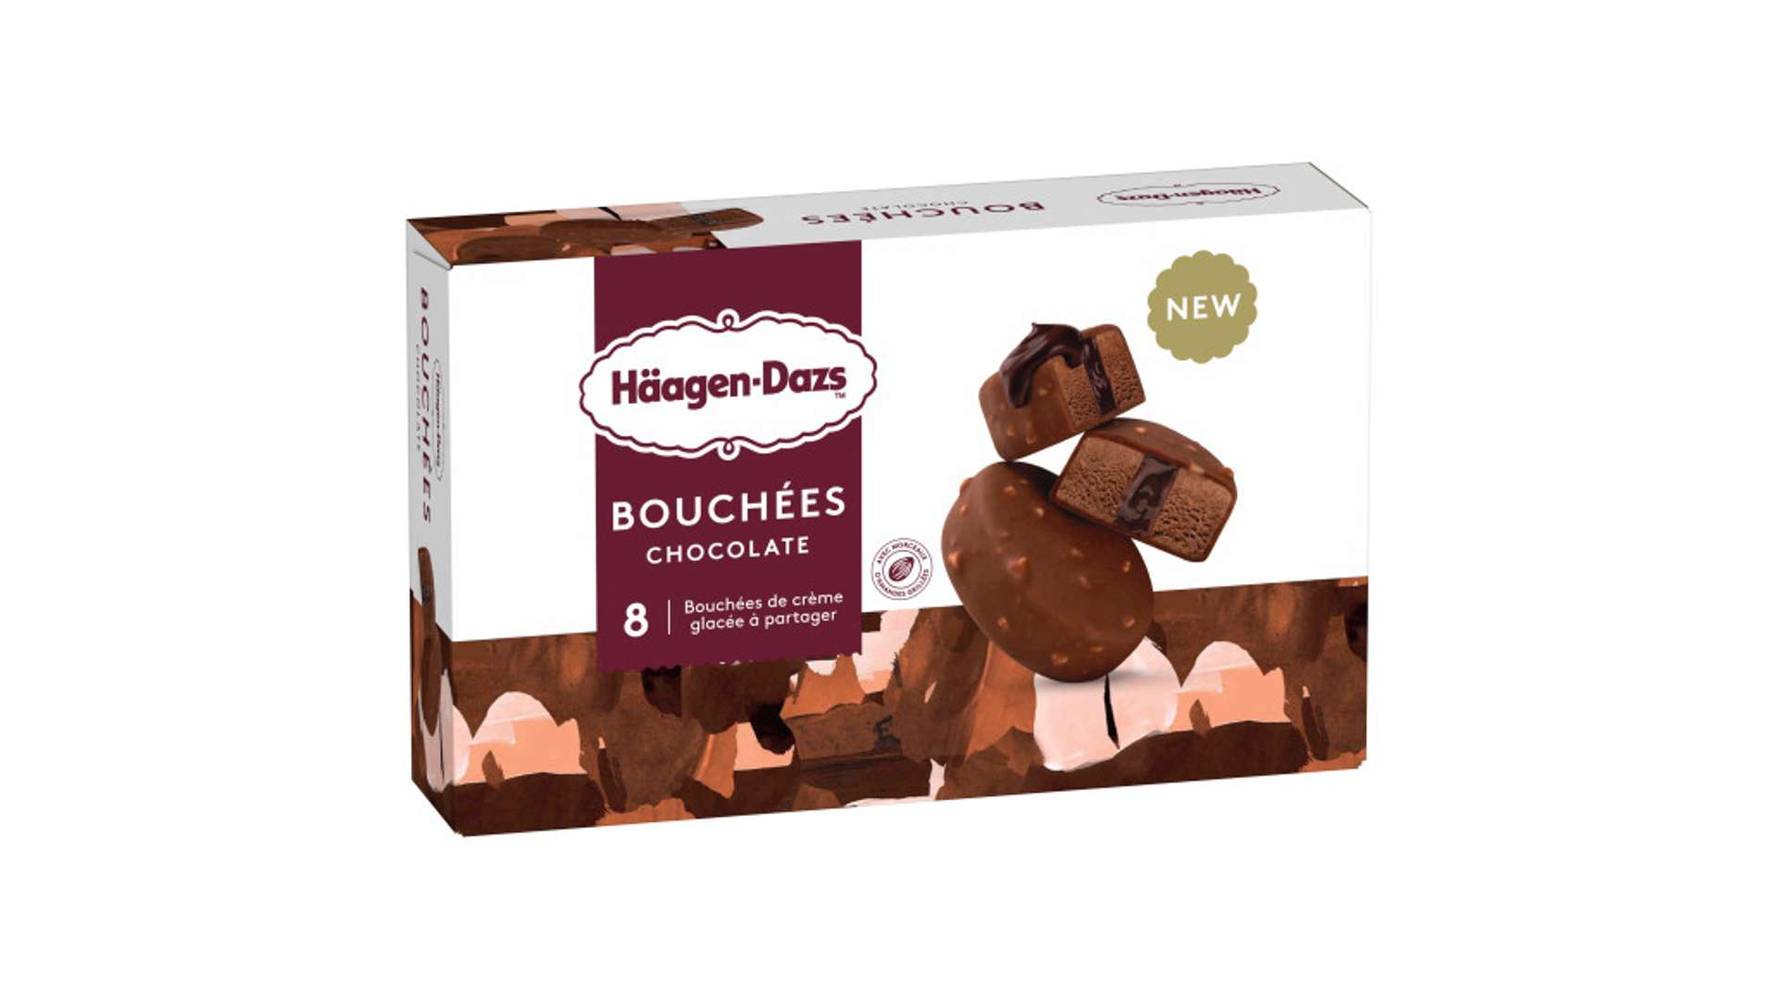 Häagen-Dazs Hd 8 bouchees chocolat 120g